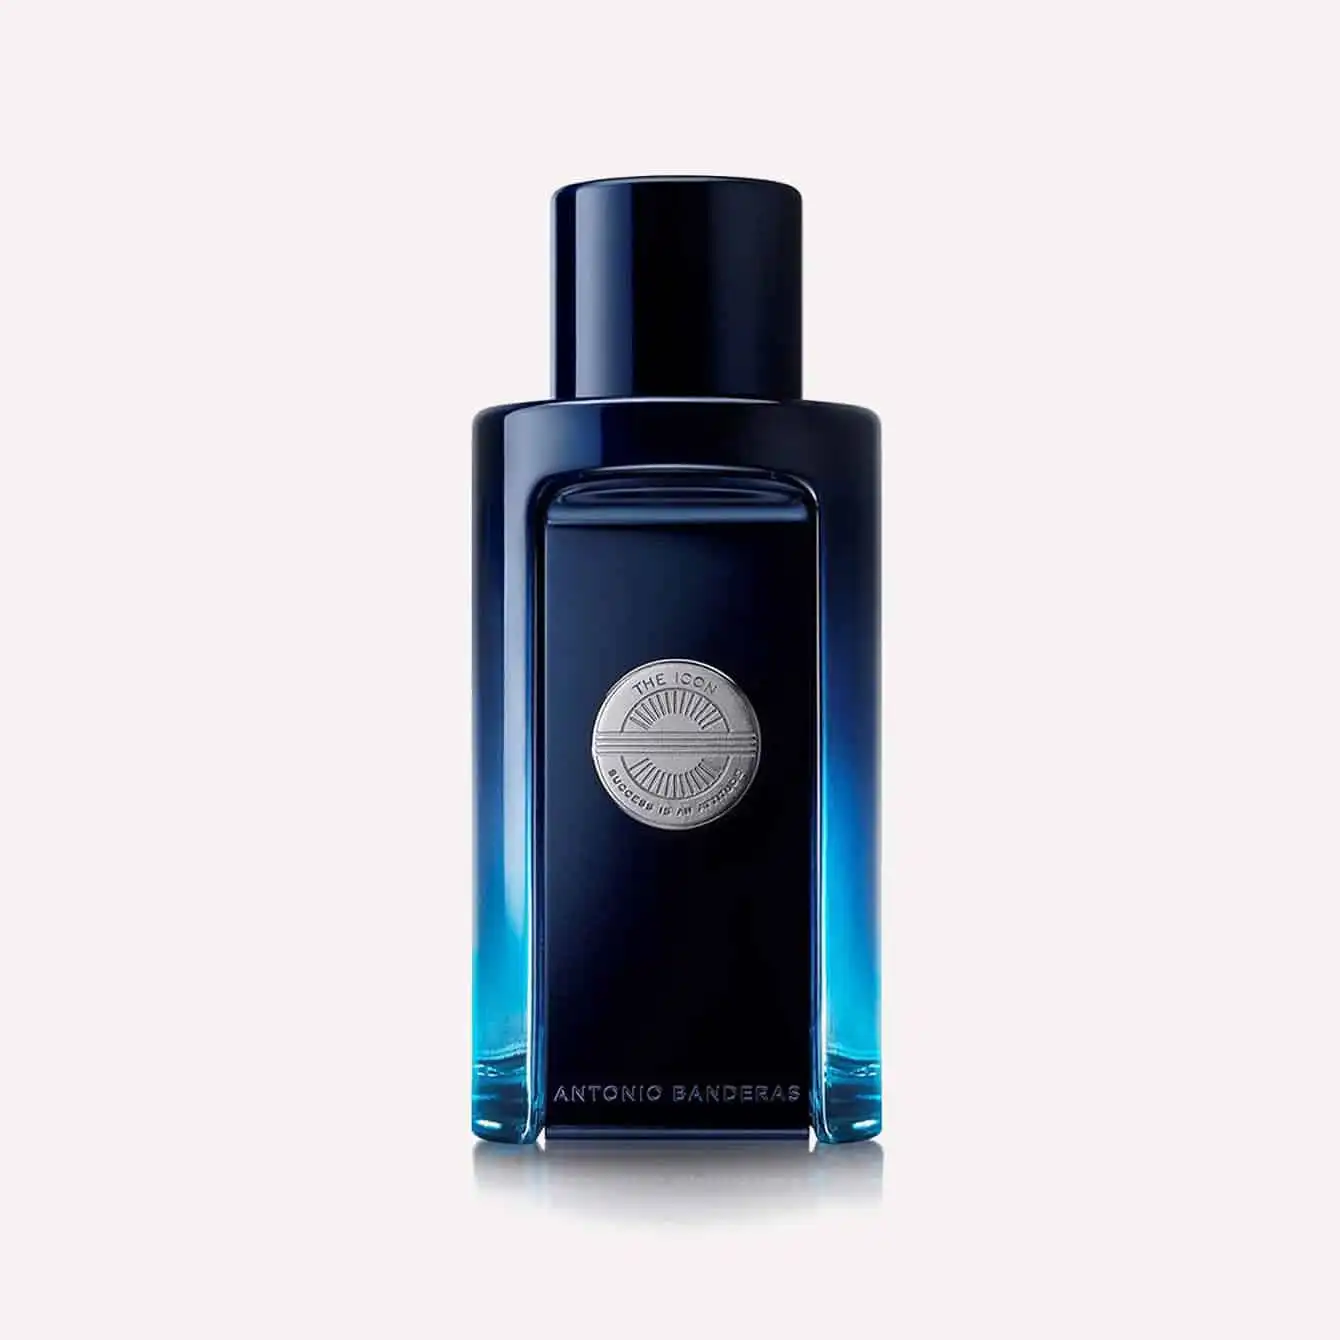 Antonio Banderas - The Icon Eau De Perfume